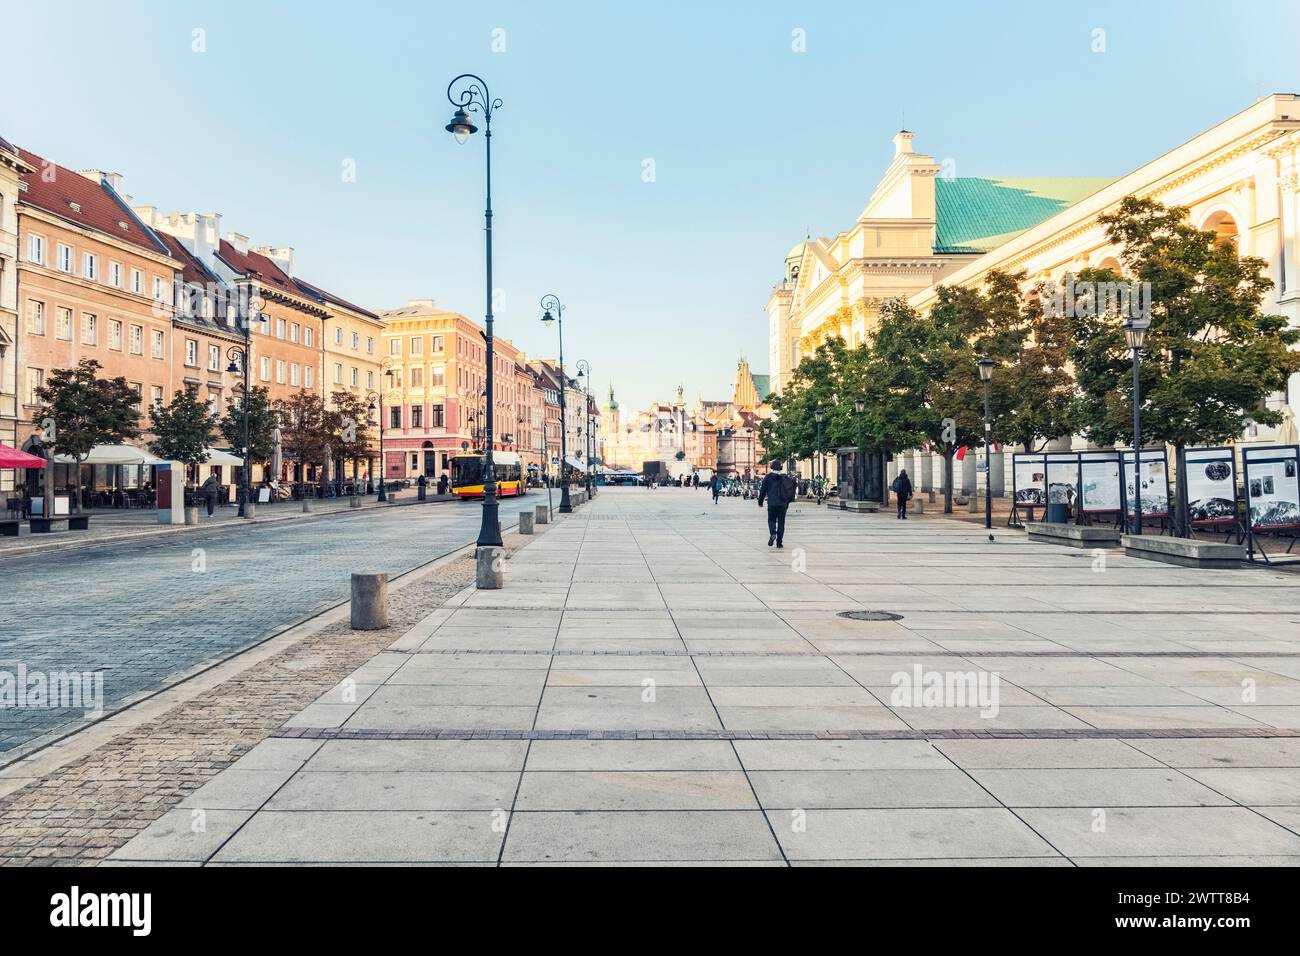 Une matinée paisible dans une rue de la ville européenne, avec peu de piétons et des bâtiments historiques bordant le chemin. Banque D'Images